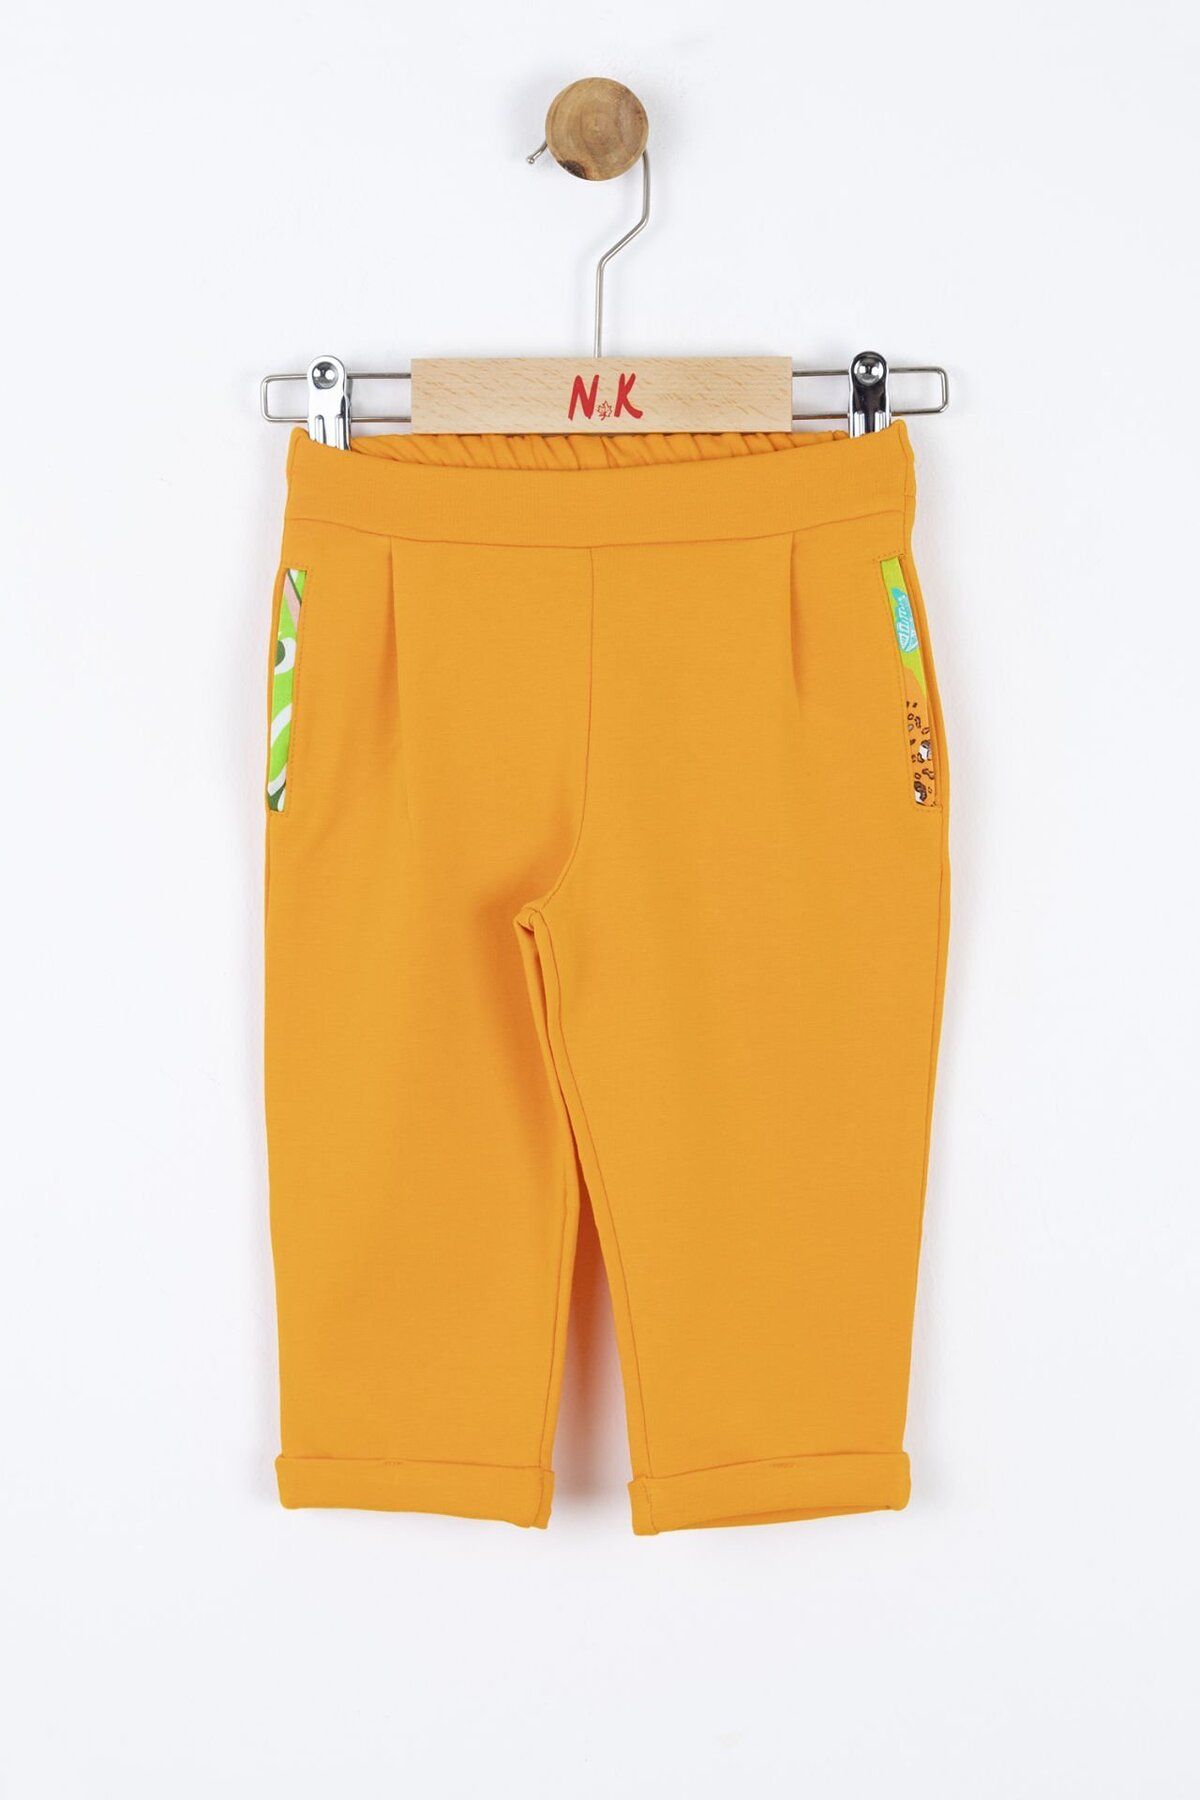 Nk Kids Nk Turuncu Pantolon (1-4 Size)